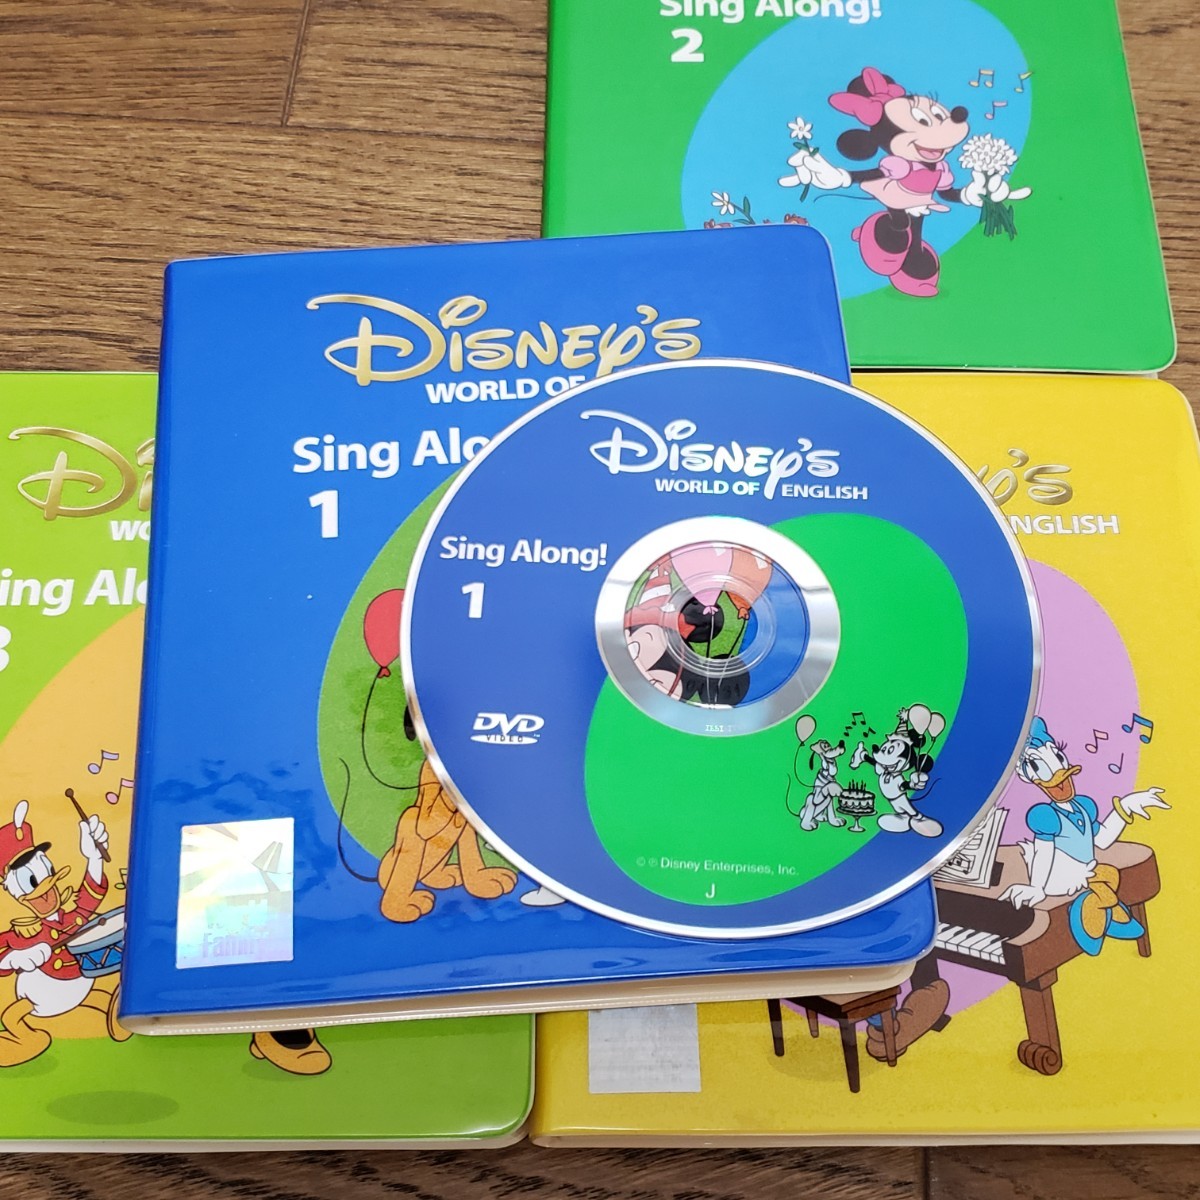 ディズニー英語システム シングアロング DVD ワールドファミリー